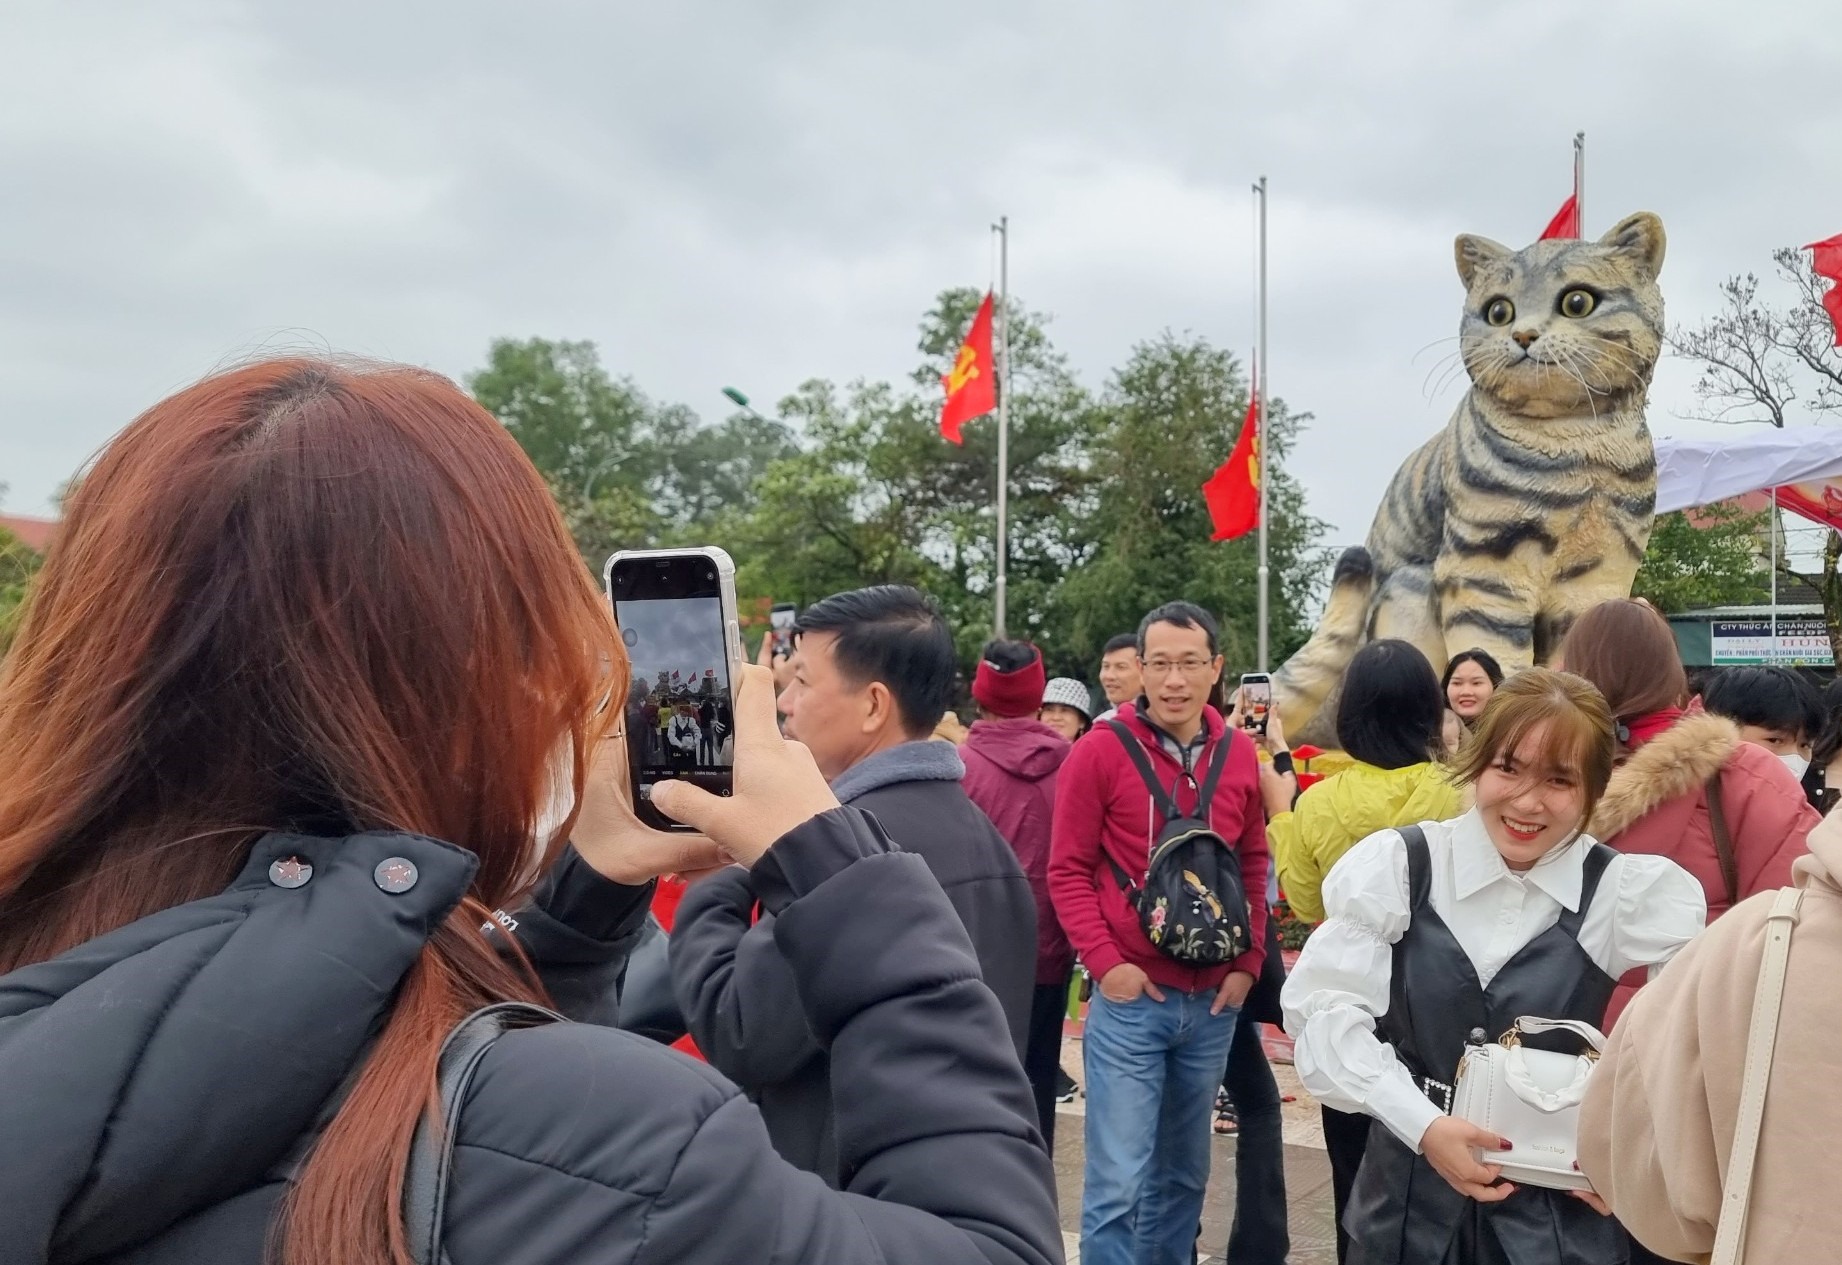 Người dân đến chụp ảnh kỷ niệm với linh vật mèo trong những ngày Tết. Ảnh: Hưng Thơ.